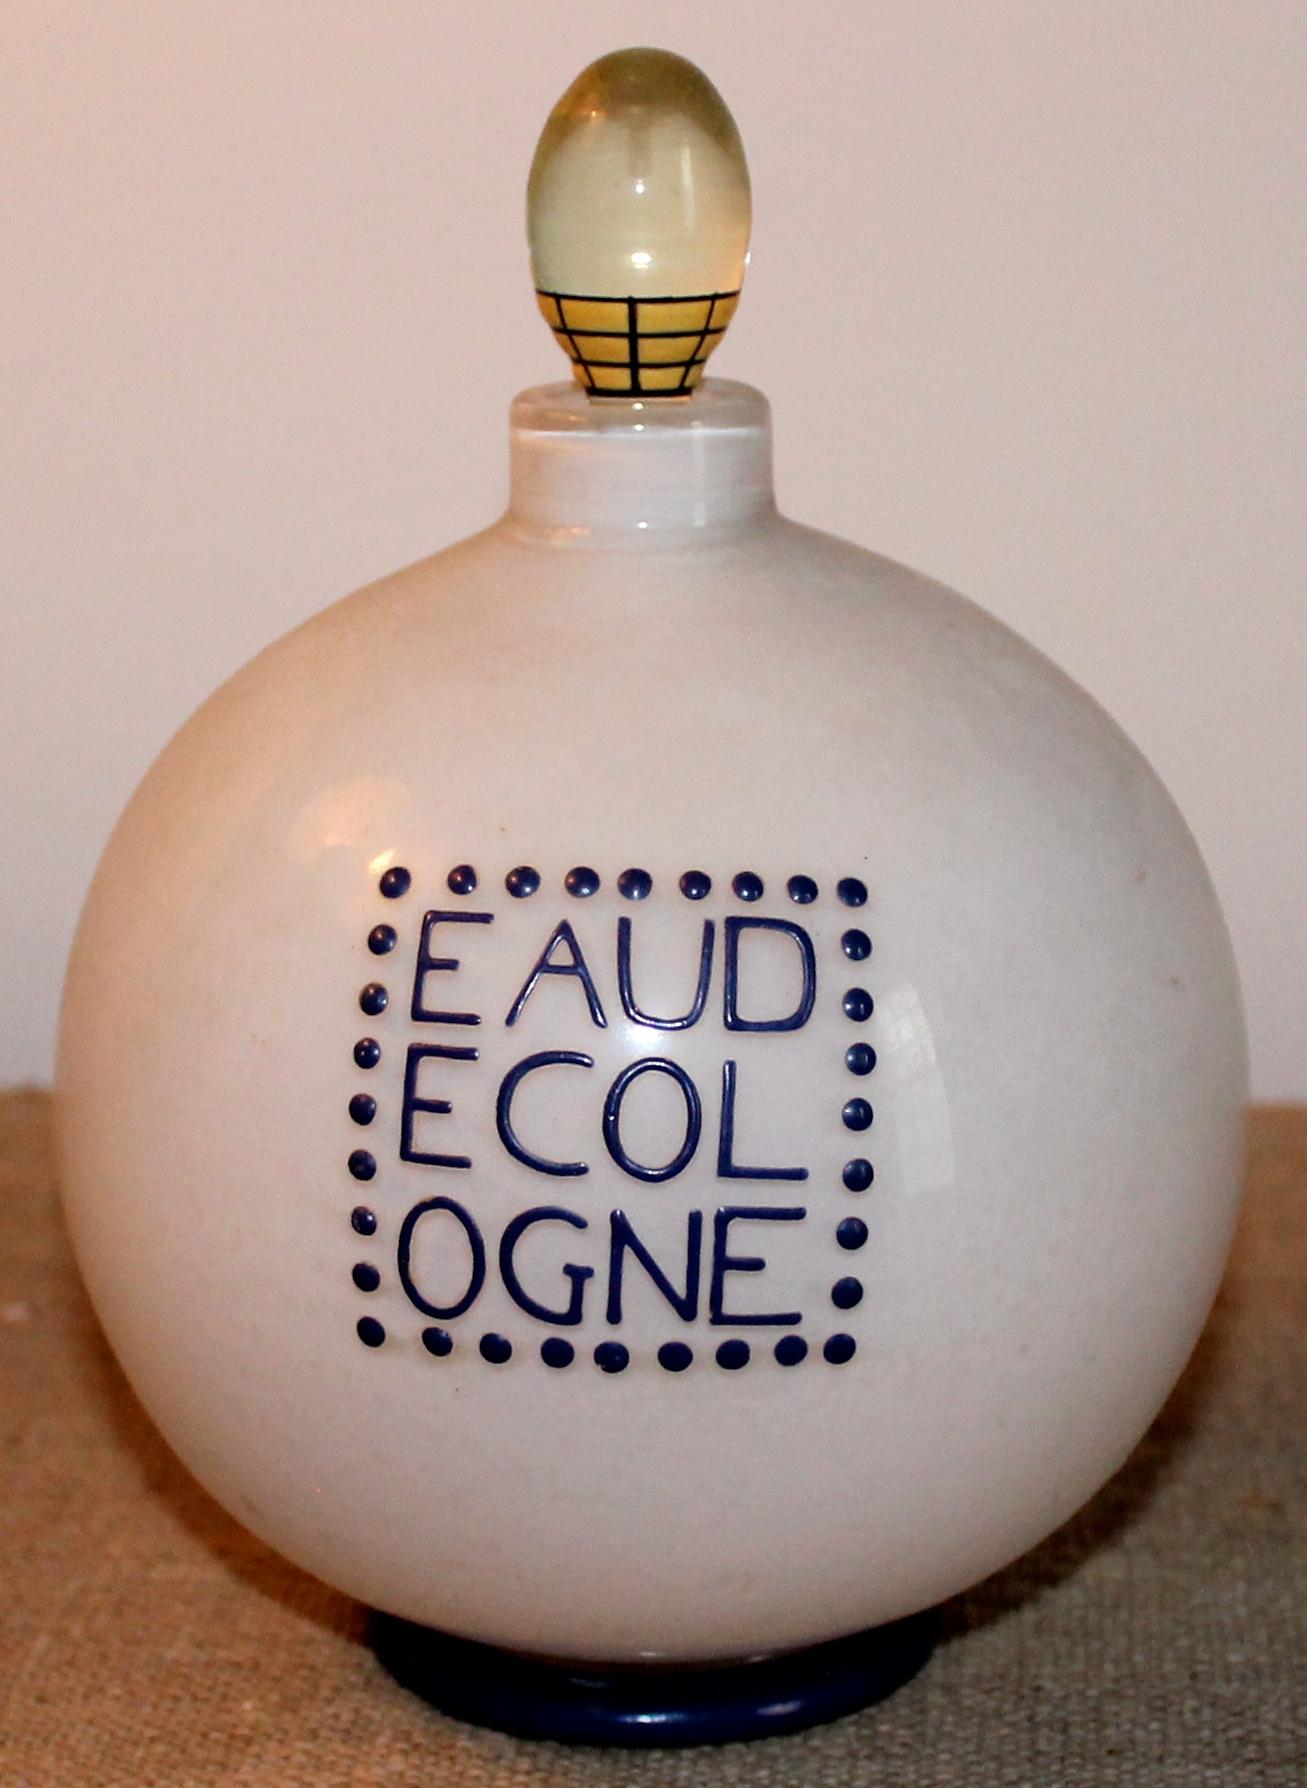 Der von Andre Groult (1884-1966) für D;Orsay entworfene Flakon ist ein Unikat, das von Hand mit Indigo emailliert und auf dem Boden mit Groults Zeichen signiert wurde. Eine runde Flasche aus weißem, klarem Glas, mit dem originalen Glasstopfen.